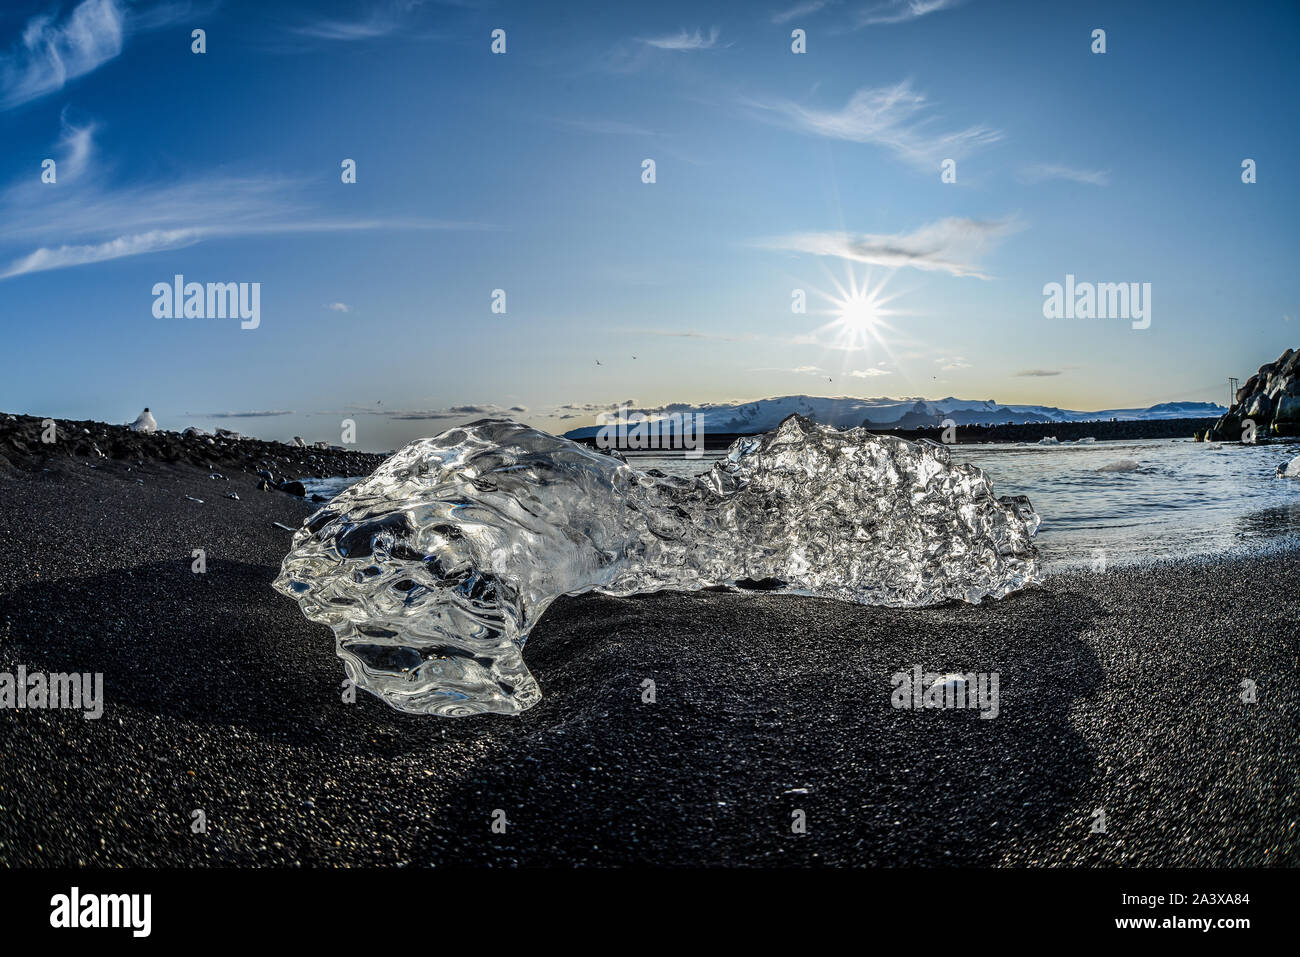 Melting Ice on diamond beach in Jokulsarlon, Iceland Stock Photo